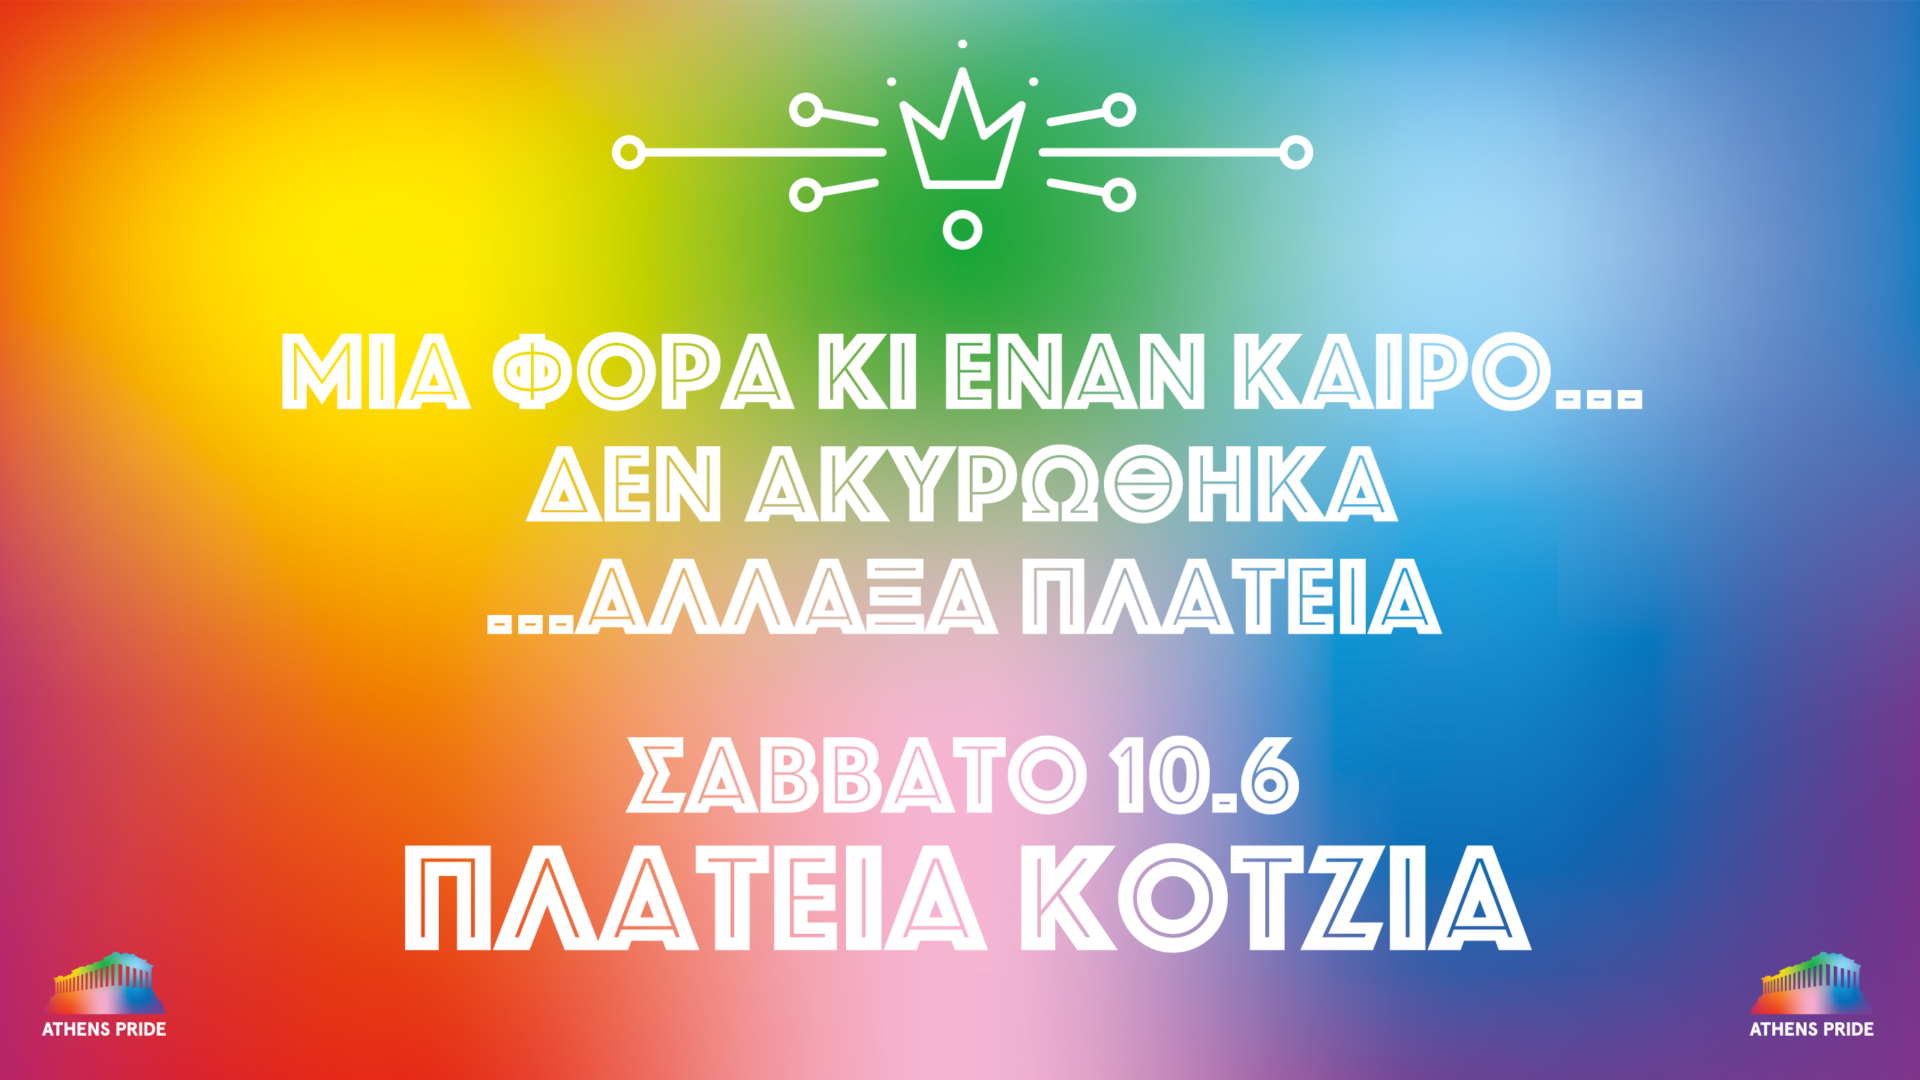 Στην πλατεία Κοτζιά (και όχι στο Σύνταγμα) θα πραγματοποιηθεί φέτος το  Athens Pride